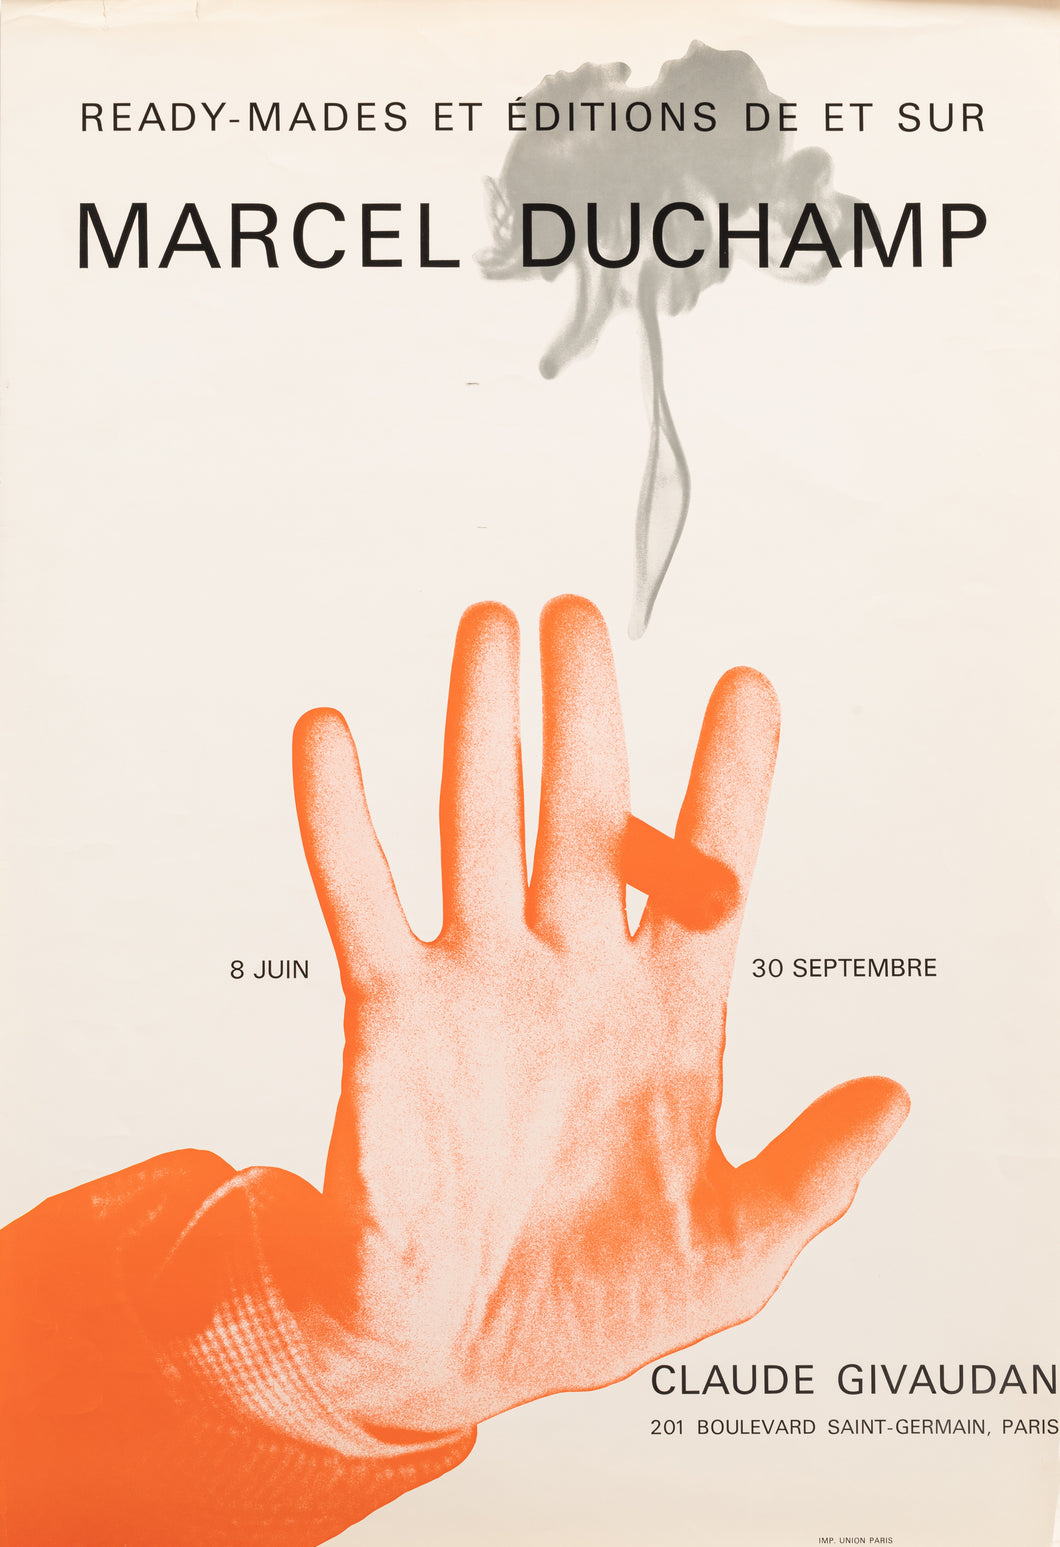 Ready-mades et Editions de et sur Marcel Duchamp. Affiche d'Exposition pour la Galerie Claude Givaudan à Paris.  1967.